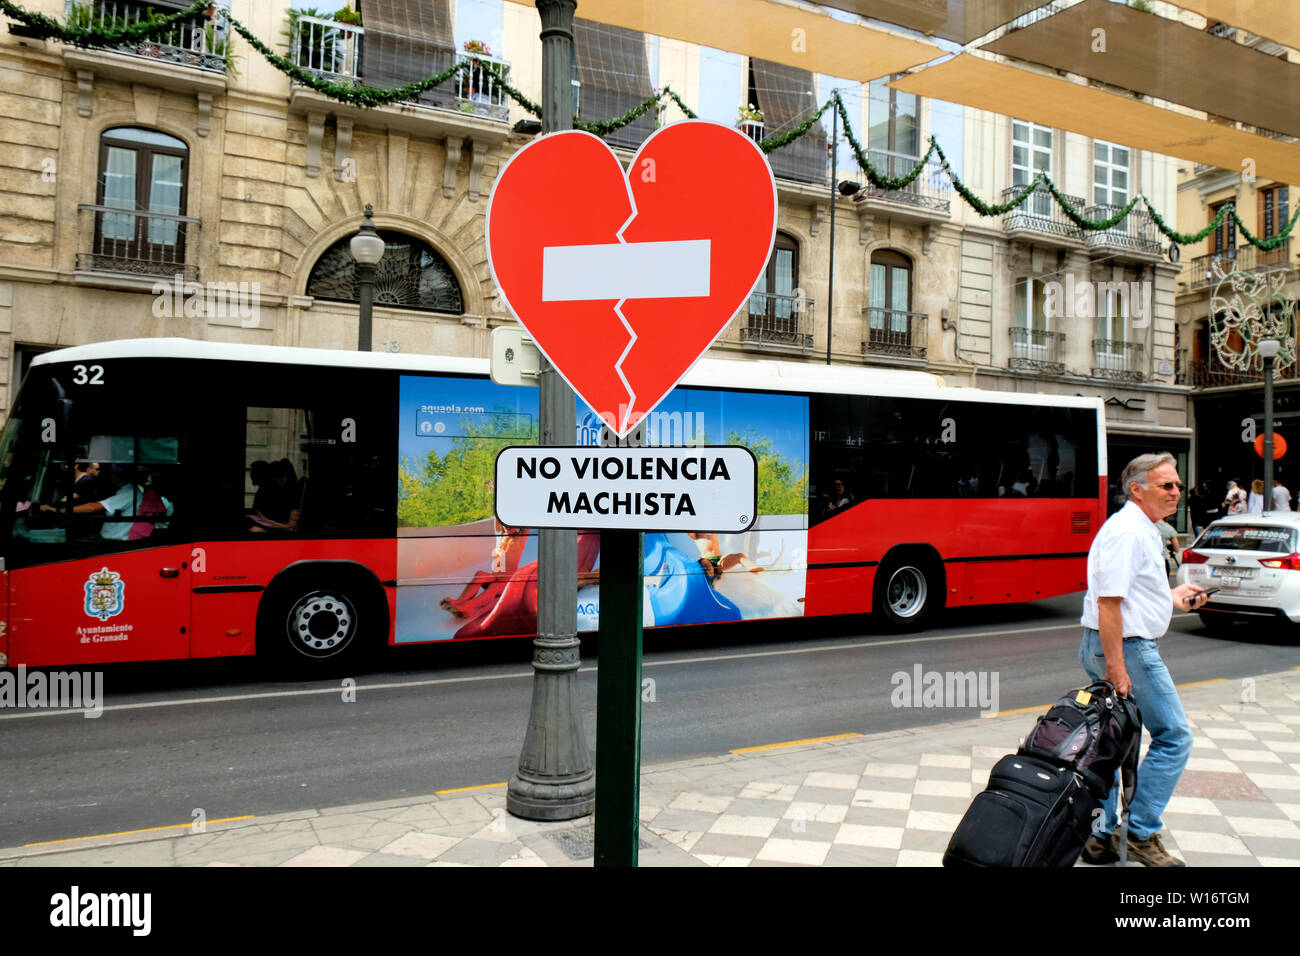 Segno a forma di cuore spezzato la supplica per porre fine alla violenza di genere nel centro cittadino di Granada, Spagna; 'no violencia machista" (nessuna violenza maschilista). Foto Stock